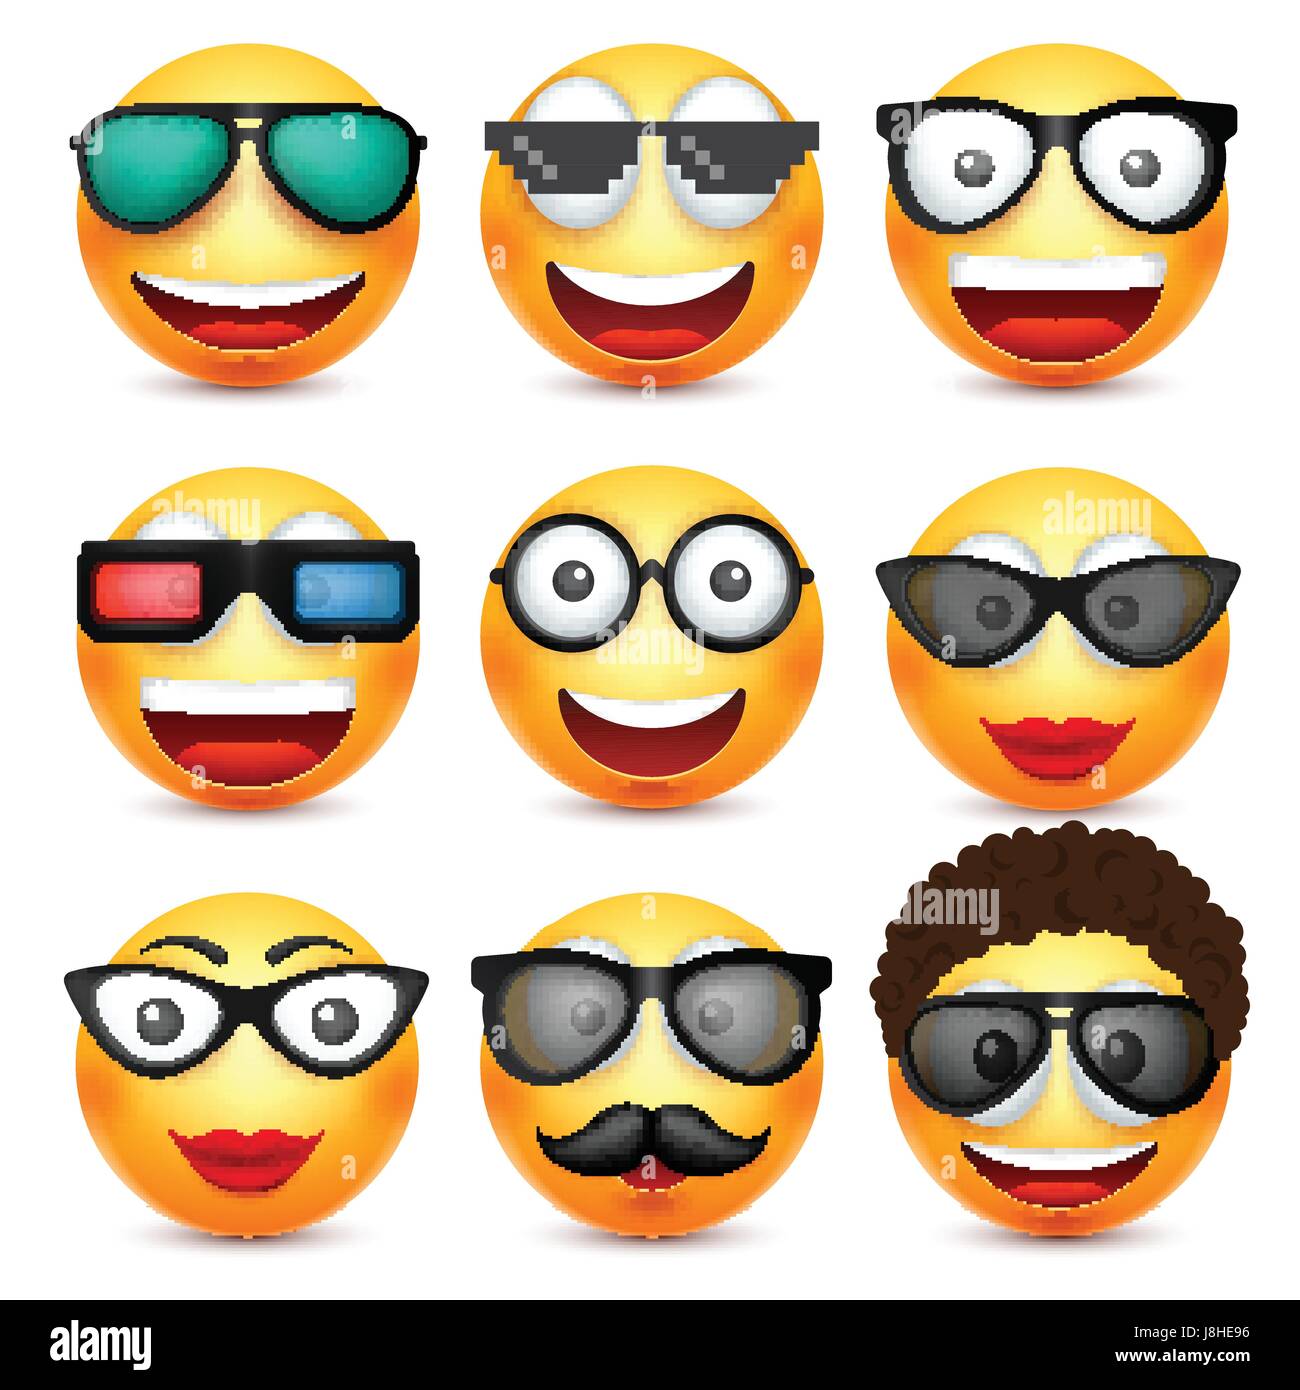 Smiley mit Brille, lächelndes Emoticon. Gelbes Gesicht mit Emotionen.  Gesichtsausdruck. 3D realistisch Emoji. Lustige Comic-Figur. Stimmung.  Web-Symbol. Vektor-Illustration Stock-Vektorgrafik - Alamy